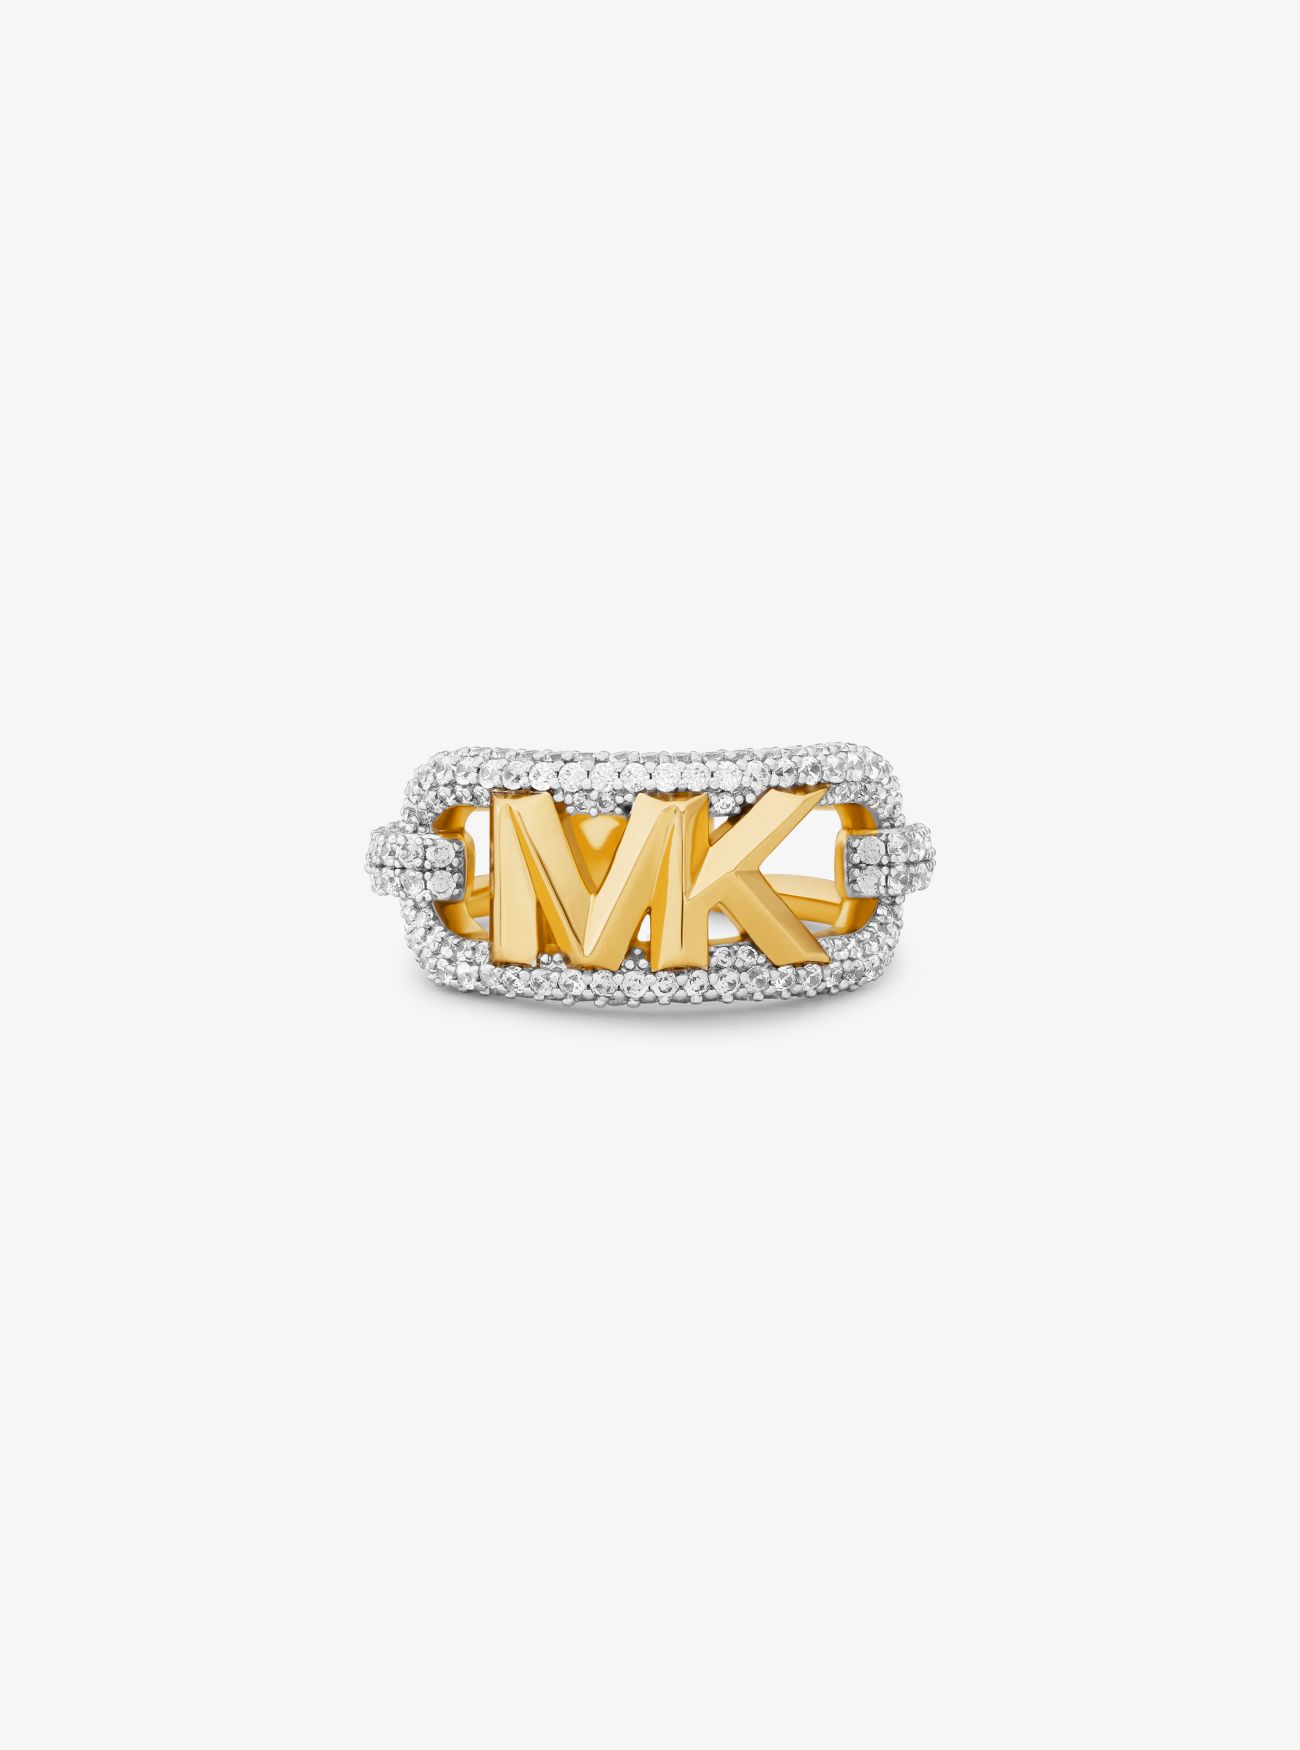 MKAnillo de latón chapado en metal precioso con logotipo imperio e incrustaciones - Plateado - Michael Kors